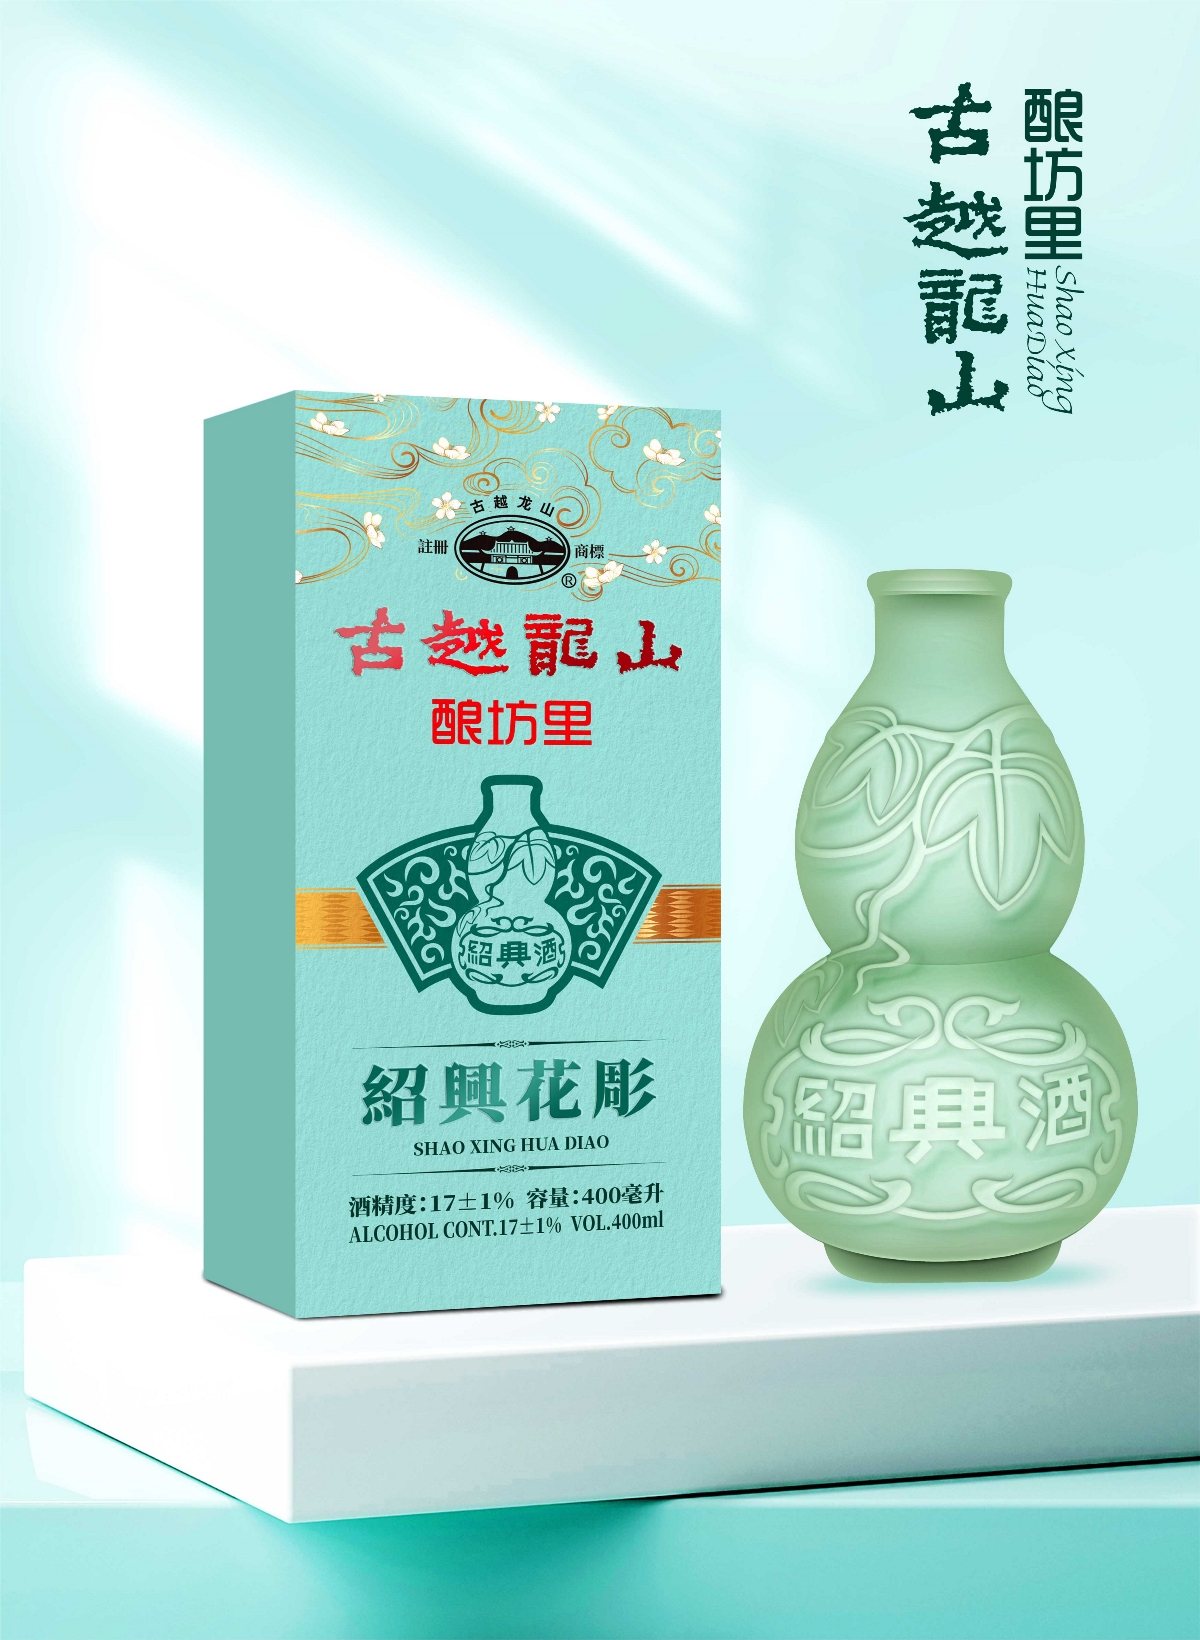 古越龙山×晨邦创意 香港特供酒包装